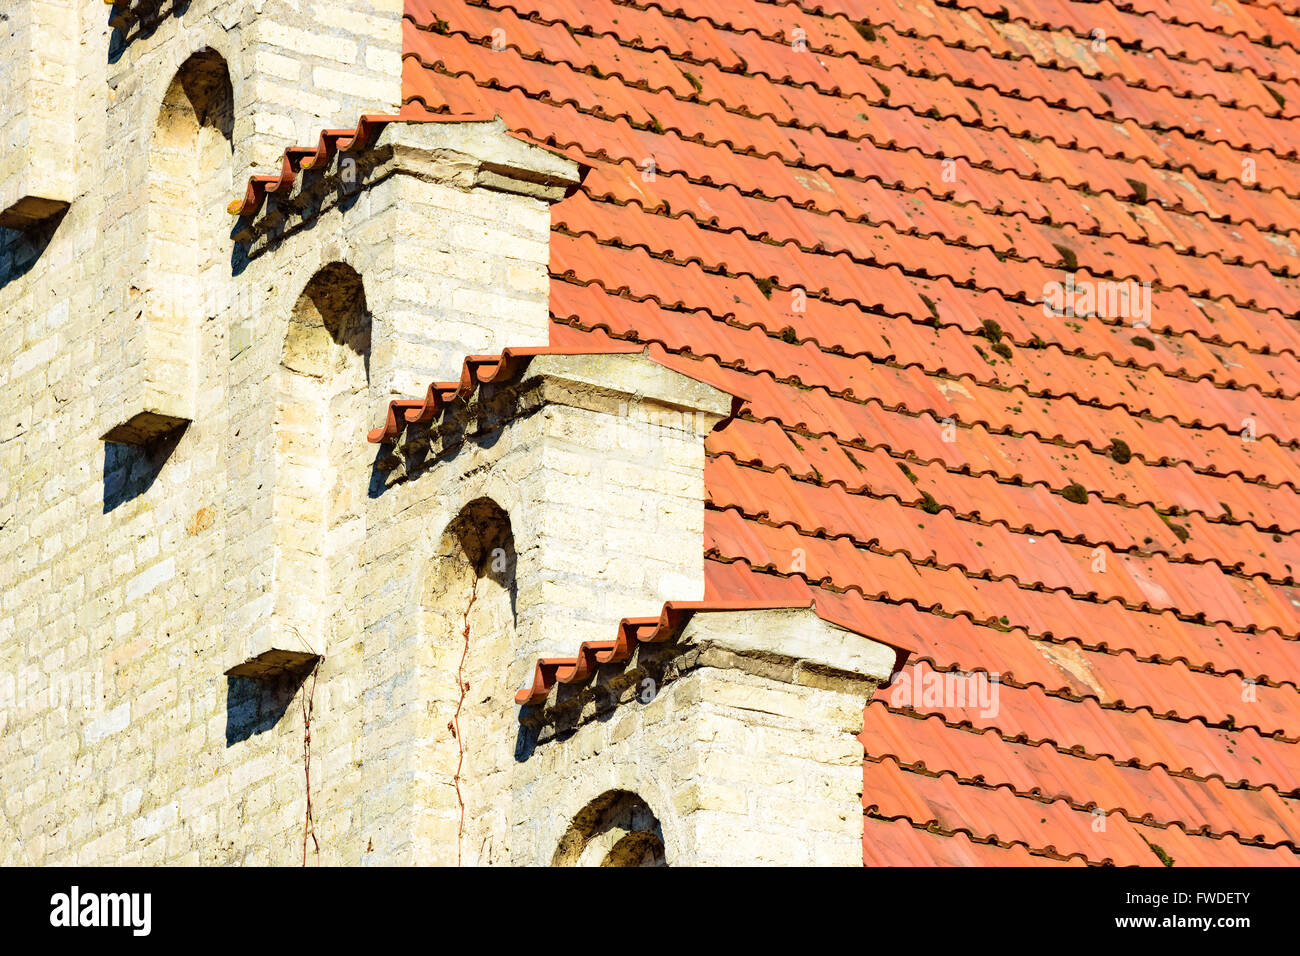 Schöne architektonische Details eines alten gemauerten Hauses die gelbe Fassade das rote Ziegeldach trifft. Stockfoto